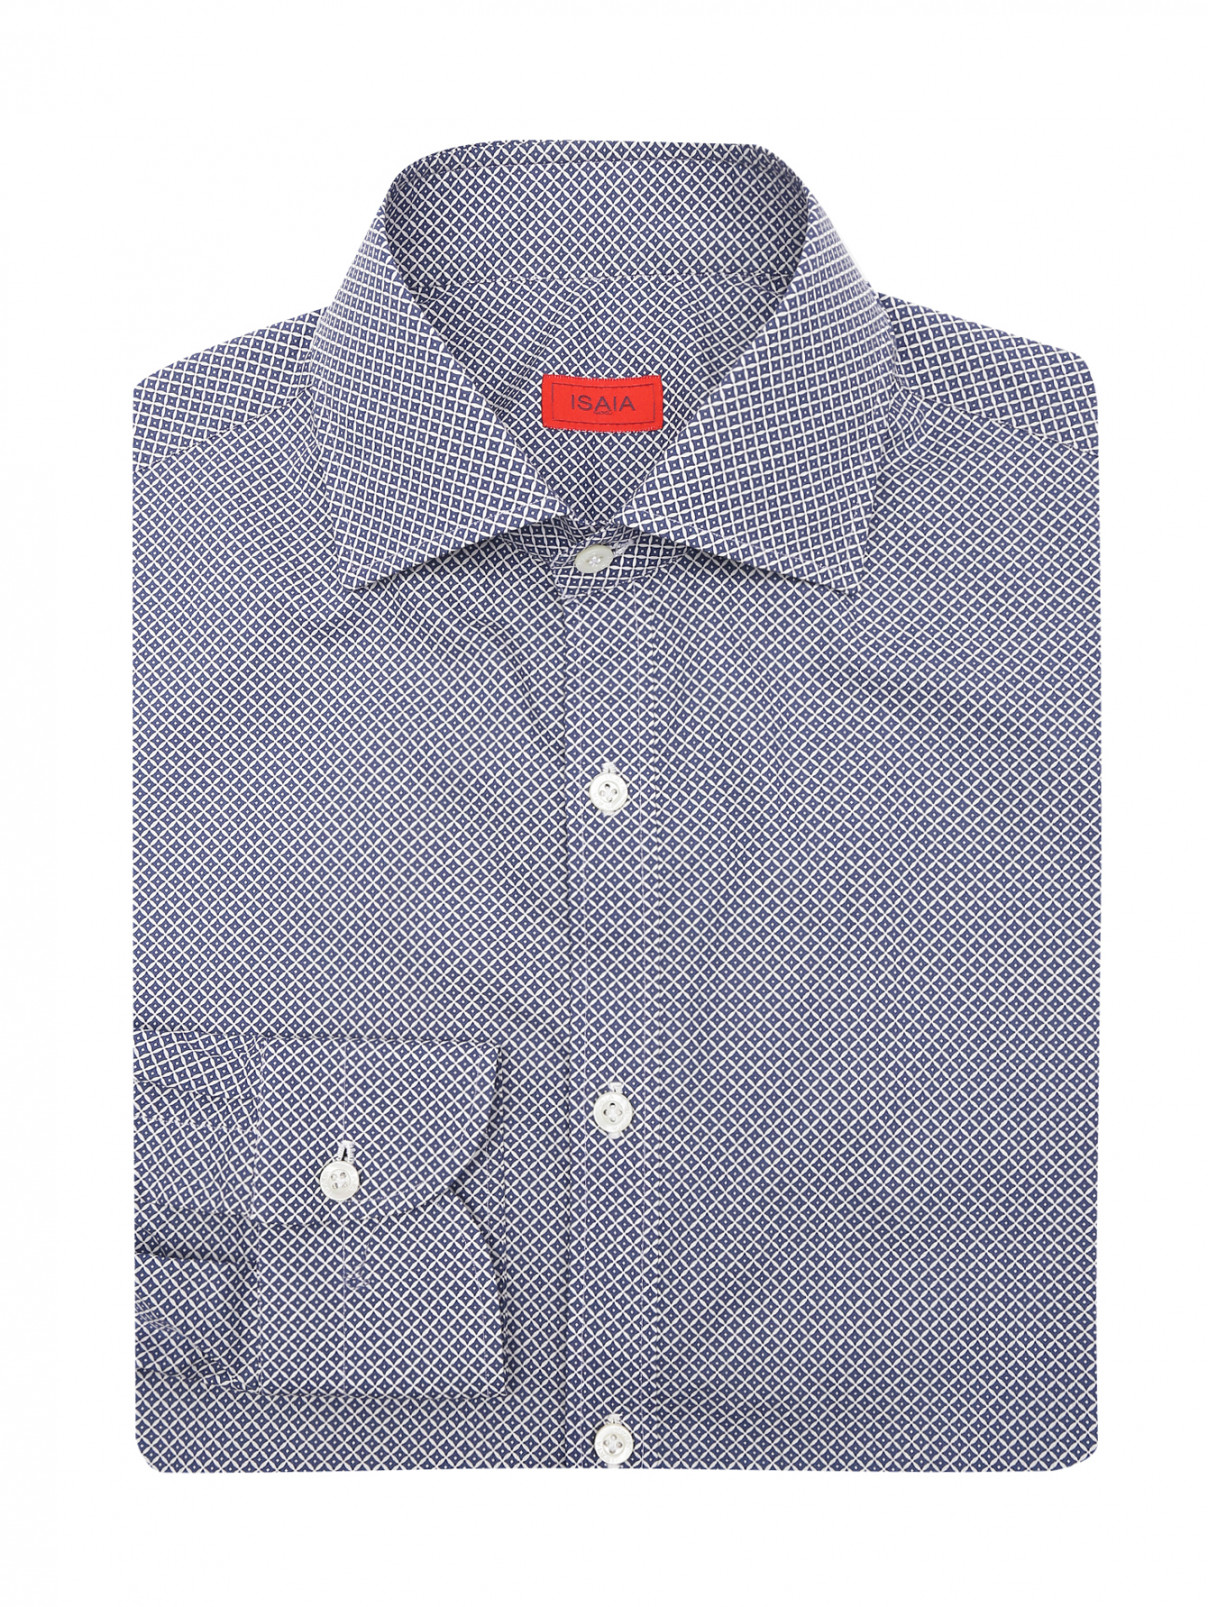 Рубашка из хлопка с узором Isaia  –  Общий вид  – Цвет:  Синий